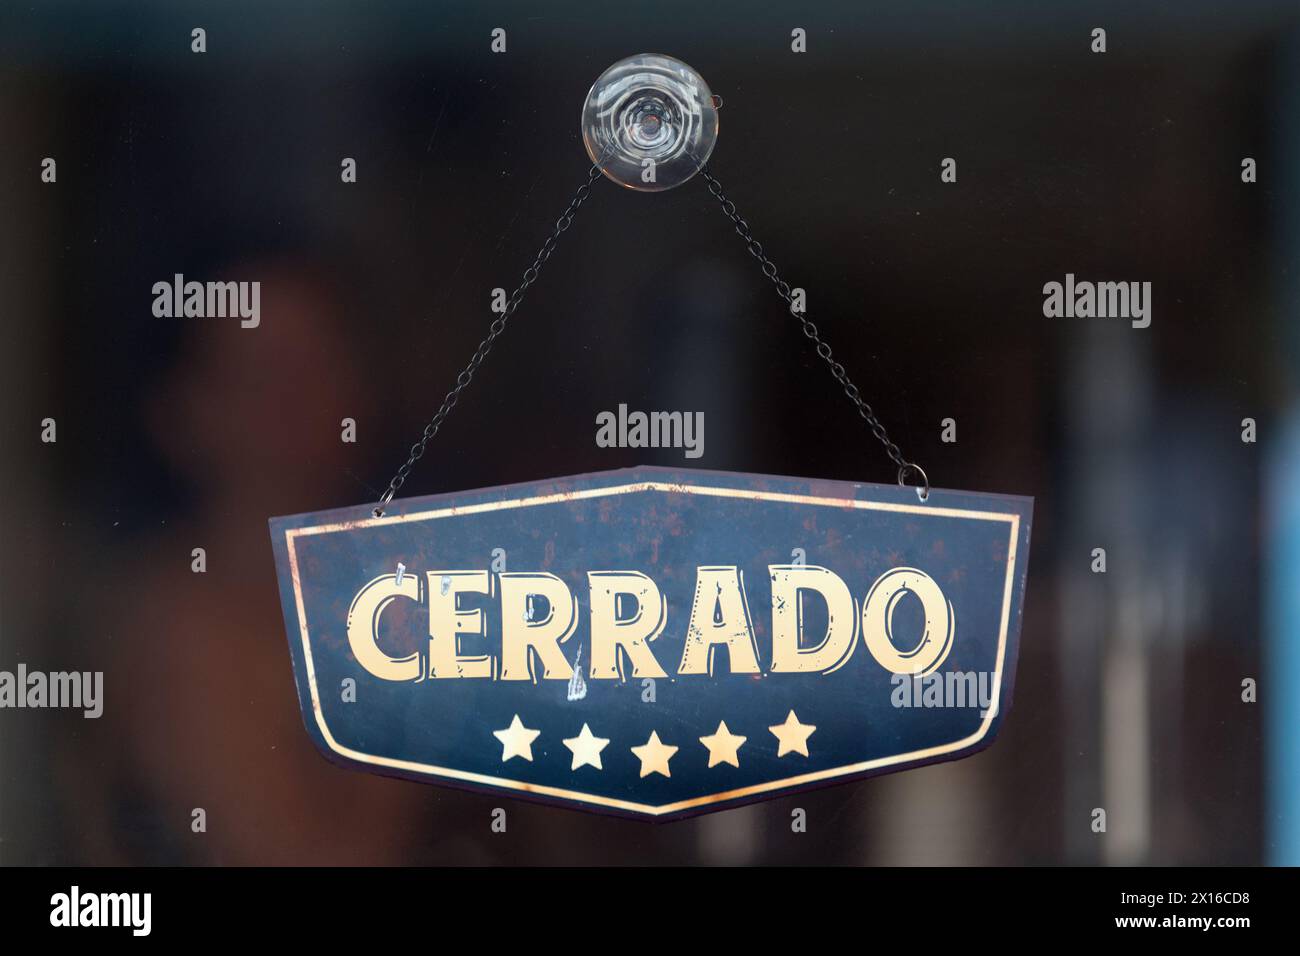 Un cartello vecchio stile nella vetrina di un negozio che recita in spagnolo "Cerrado", che in inglese significa "chiuso". Foto Stock